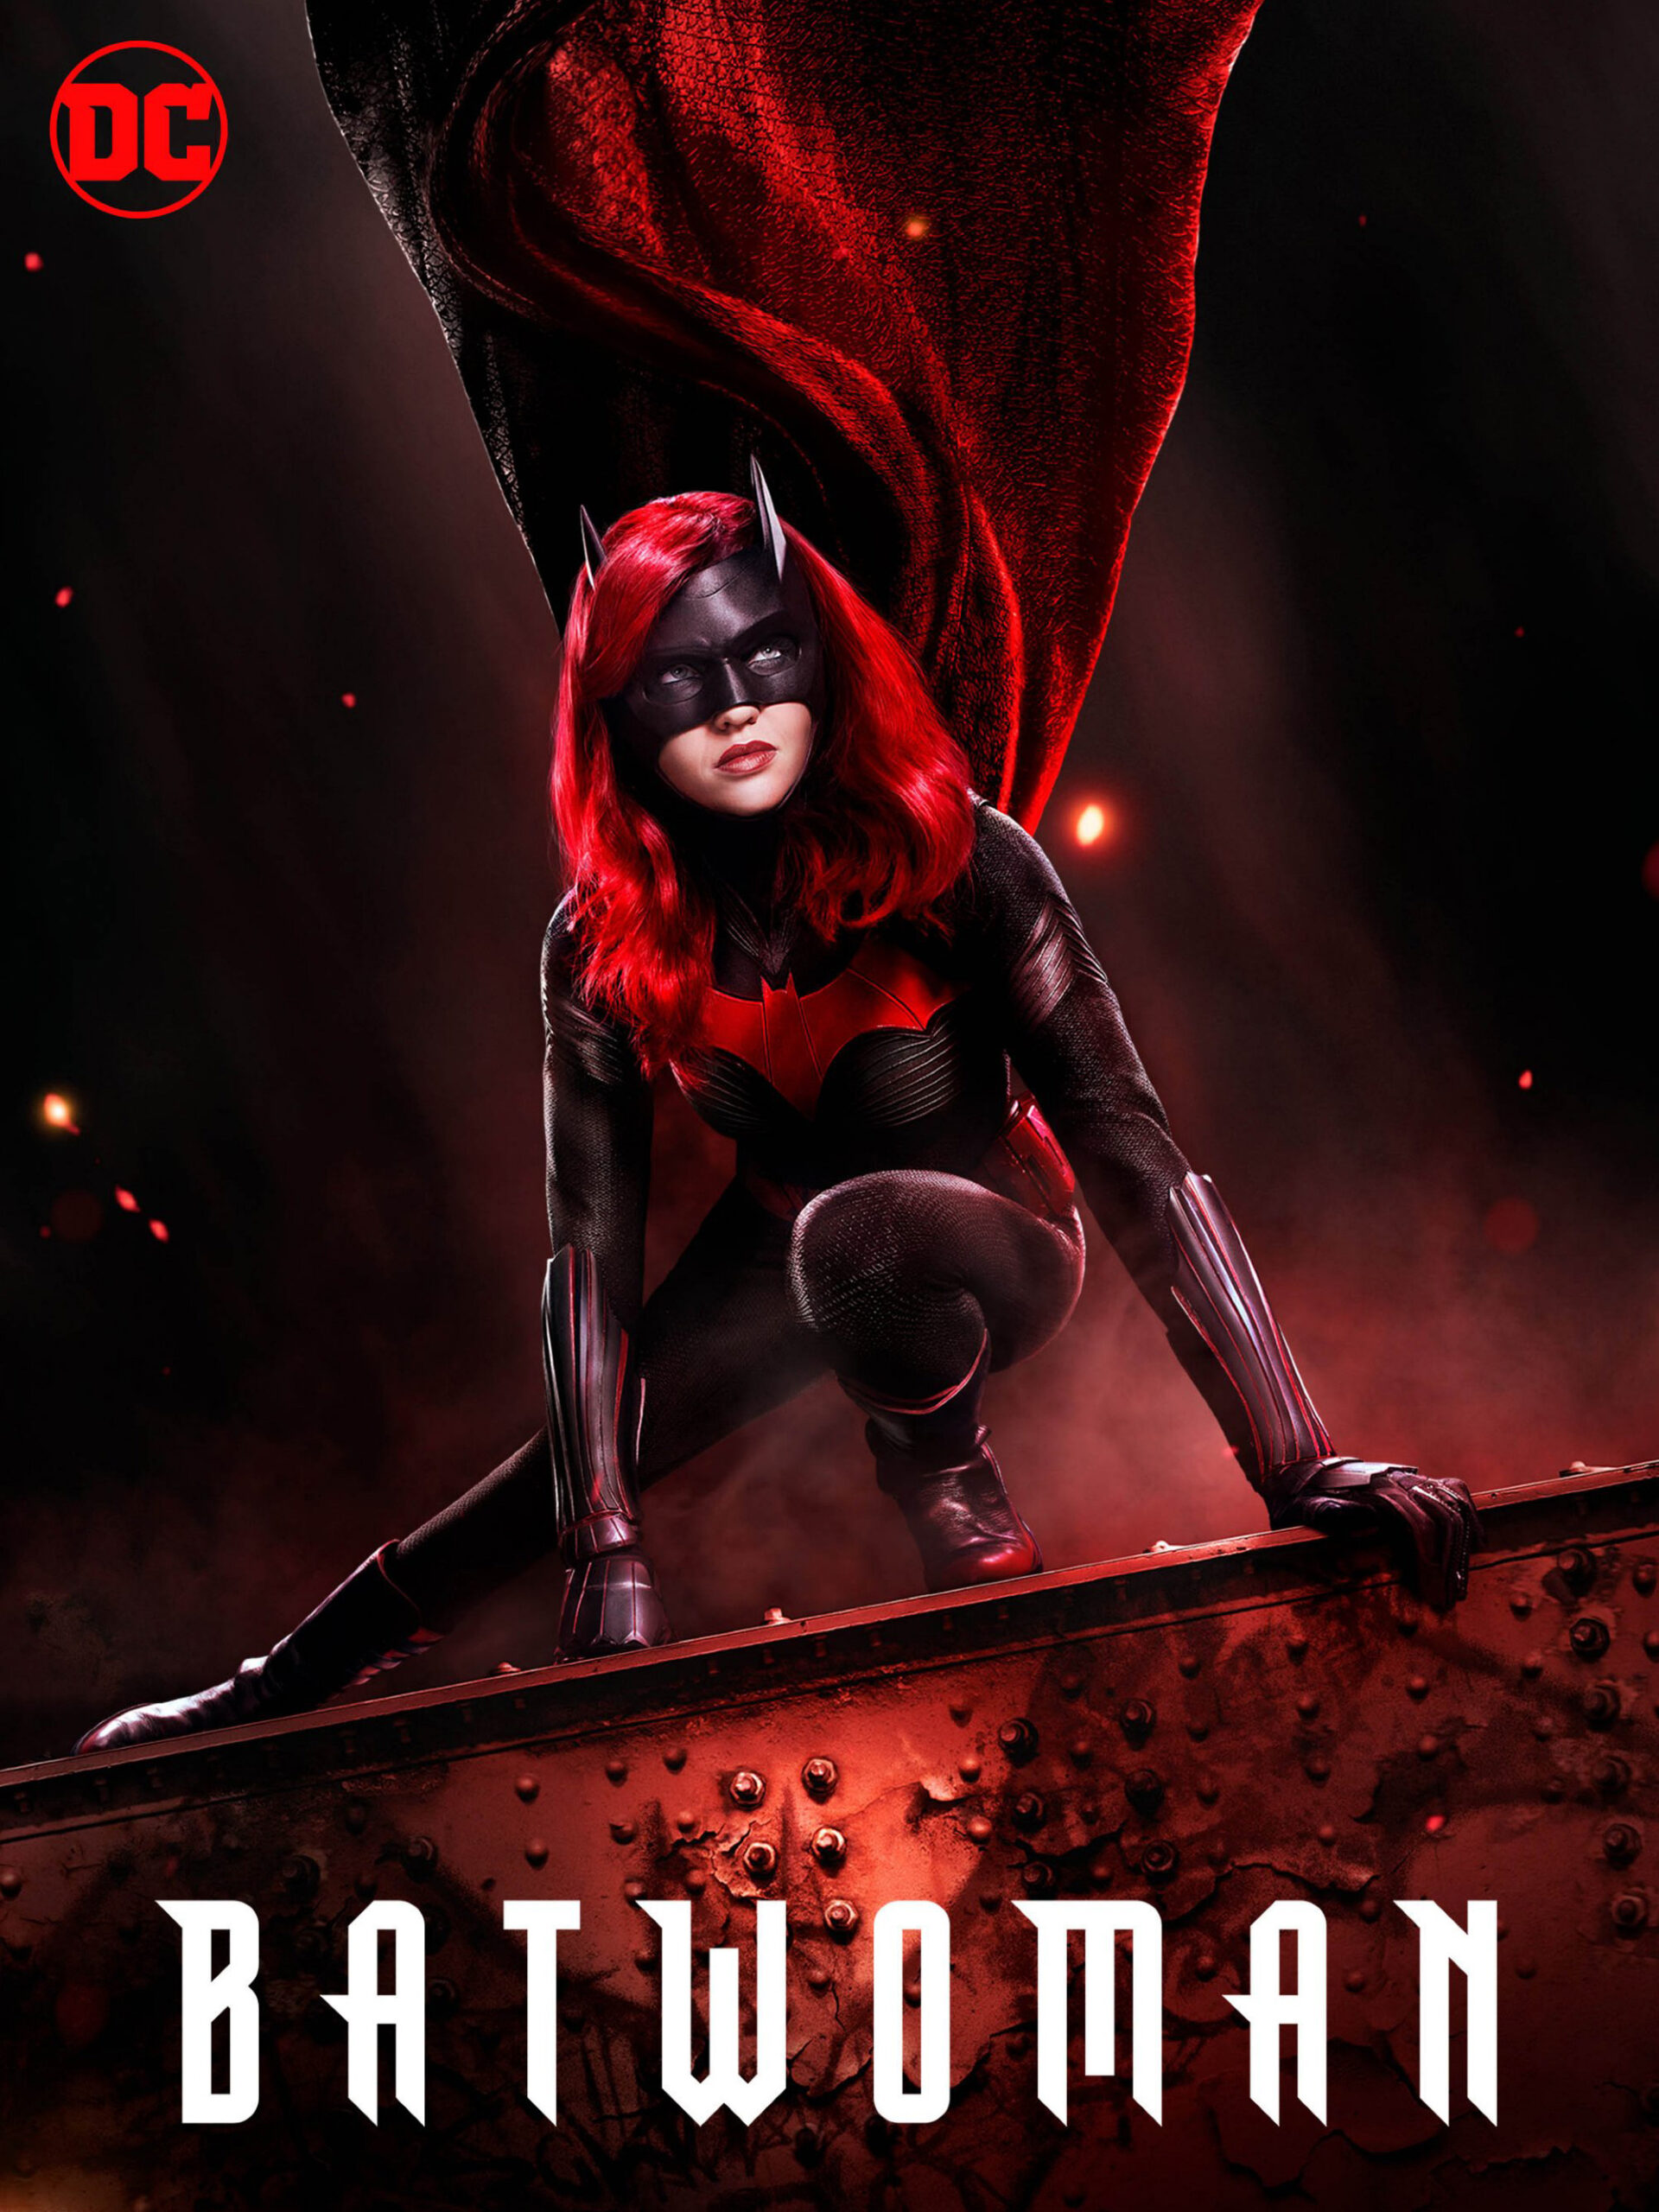 ดูหนังออนไลน์ฟรี Batwoman Season 1 (2019) EP.6 แบทวูแมน ซีซั่น 1 ตอนที่ 6 (Soundtrack)